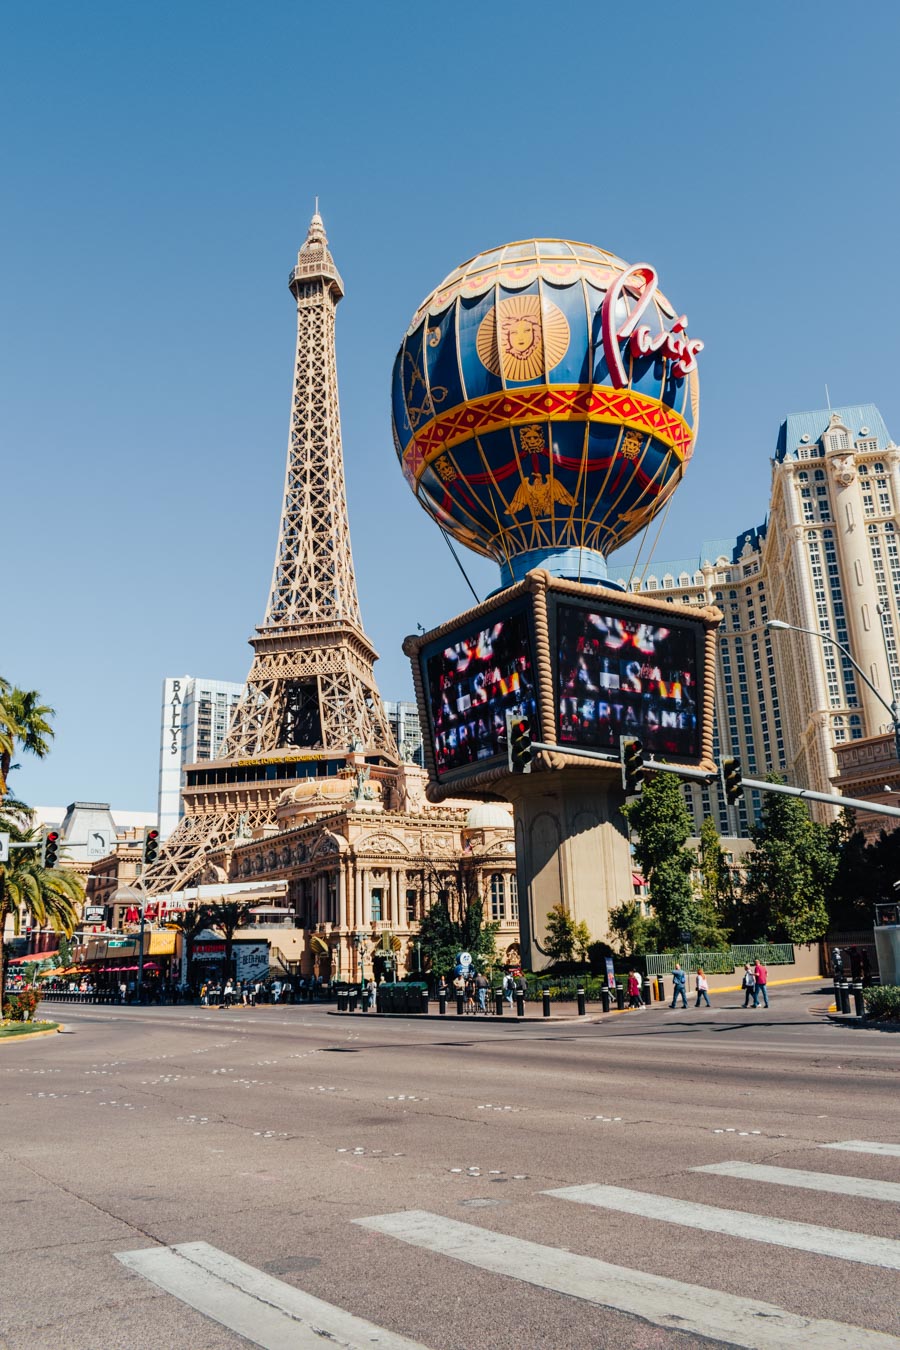 Mini Eiffel Tower - Picture of Paris Las Vegas Hotel & Casino